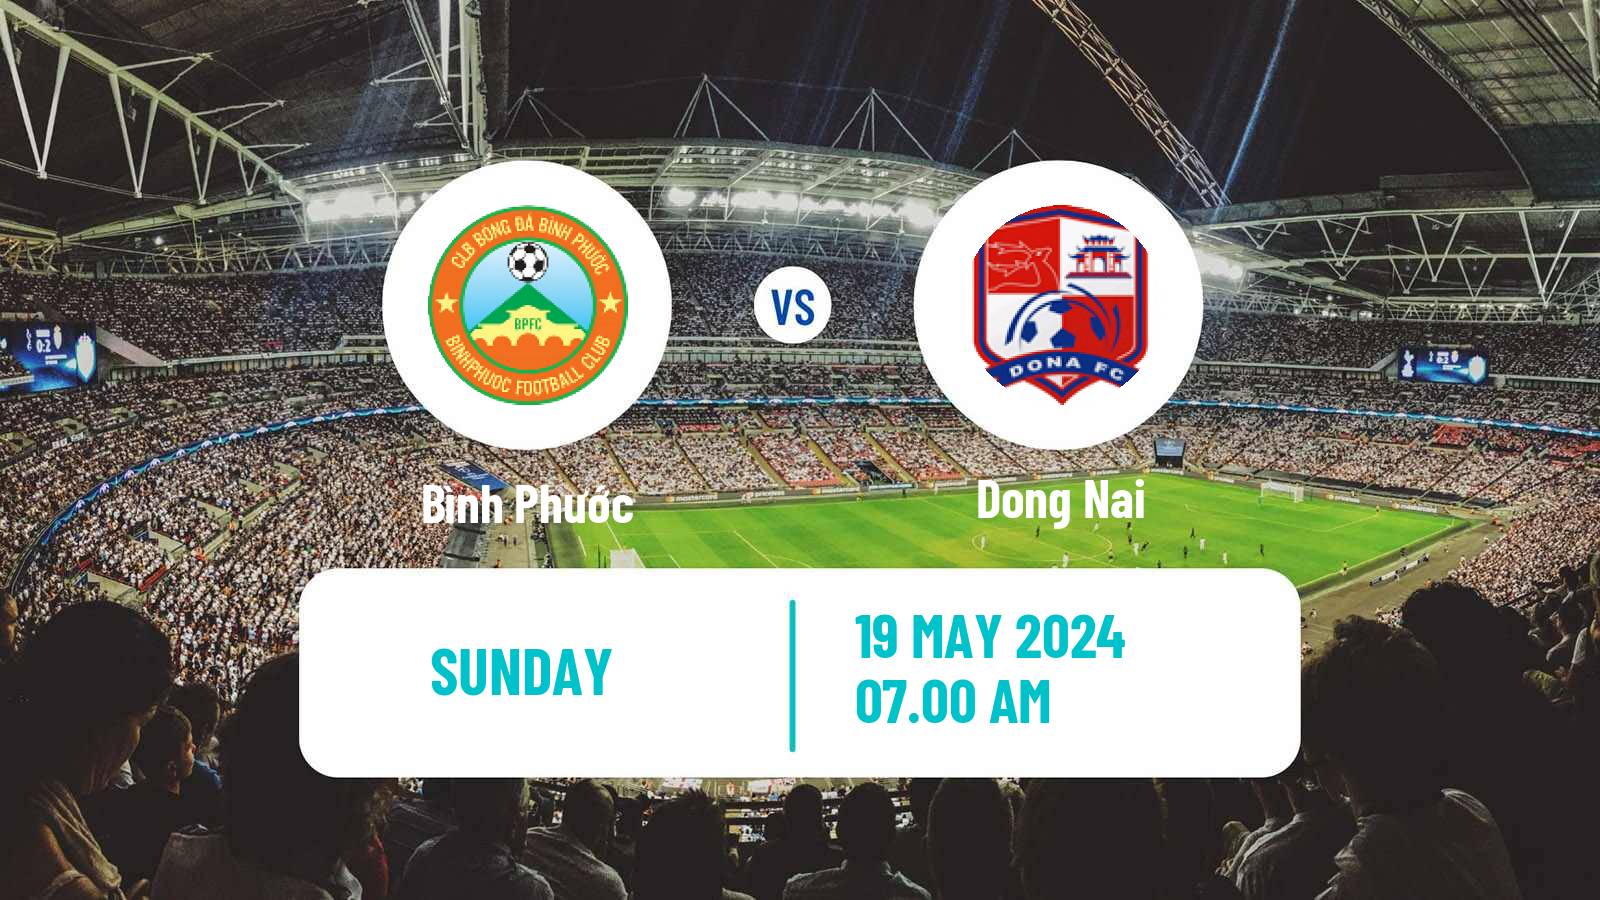 Soccer Vietnamese V League 2 Bình Phước - Dong Nai